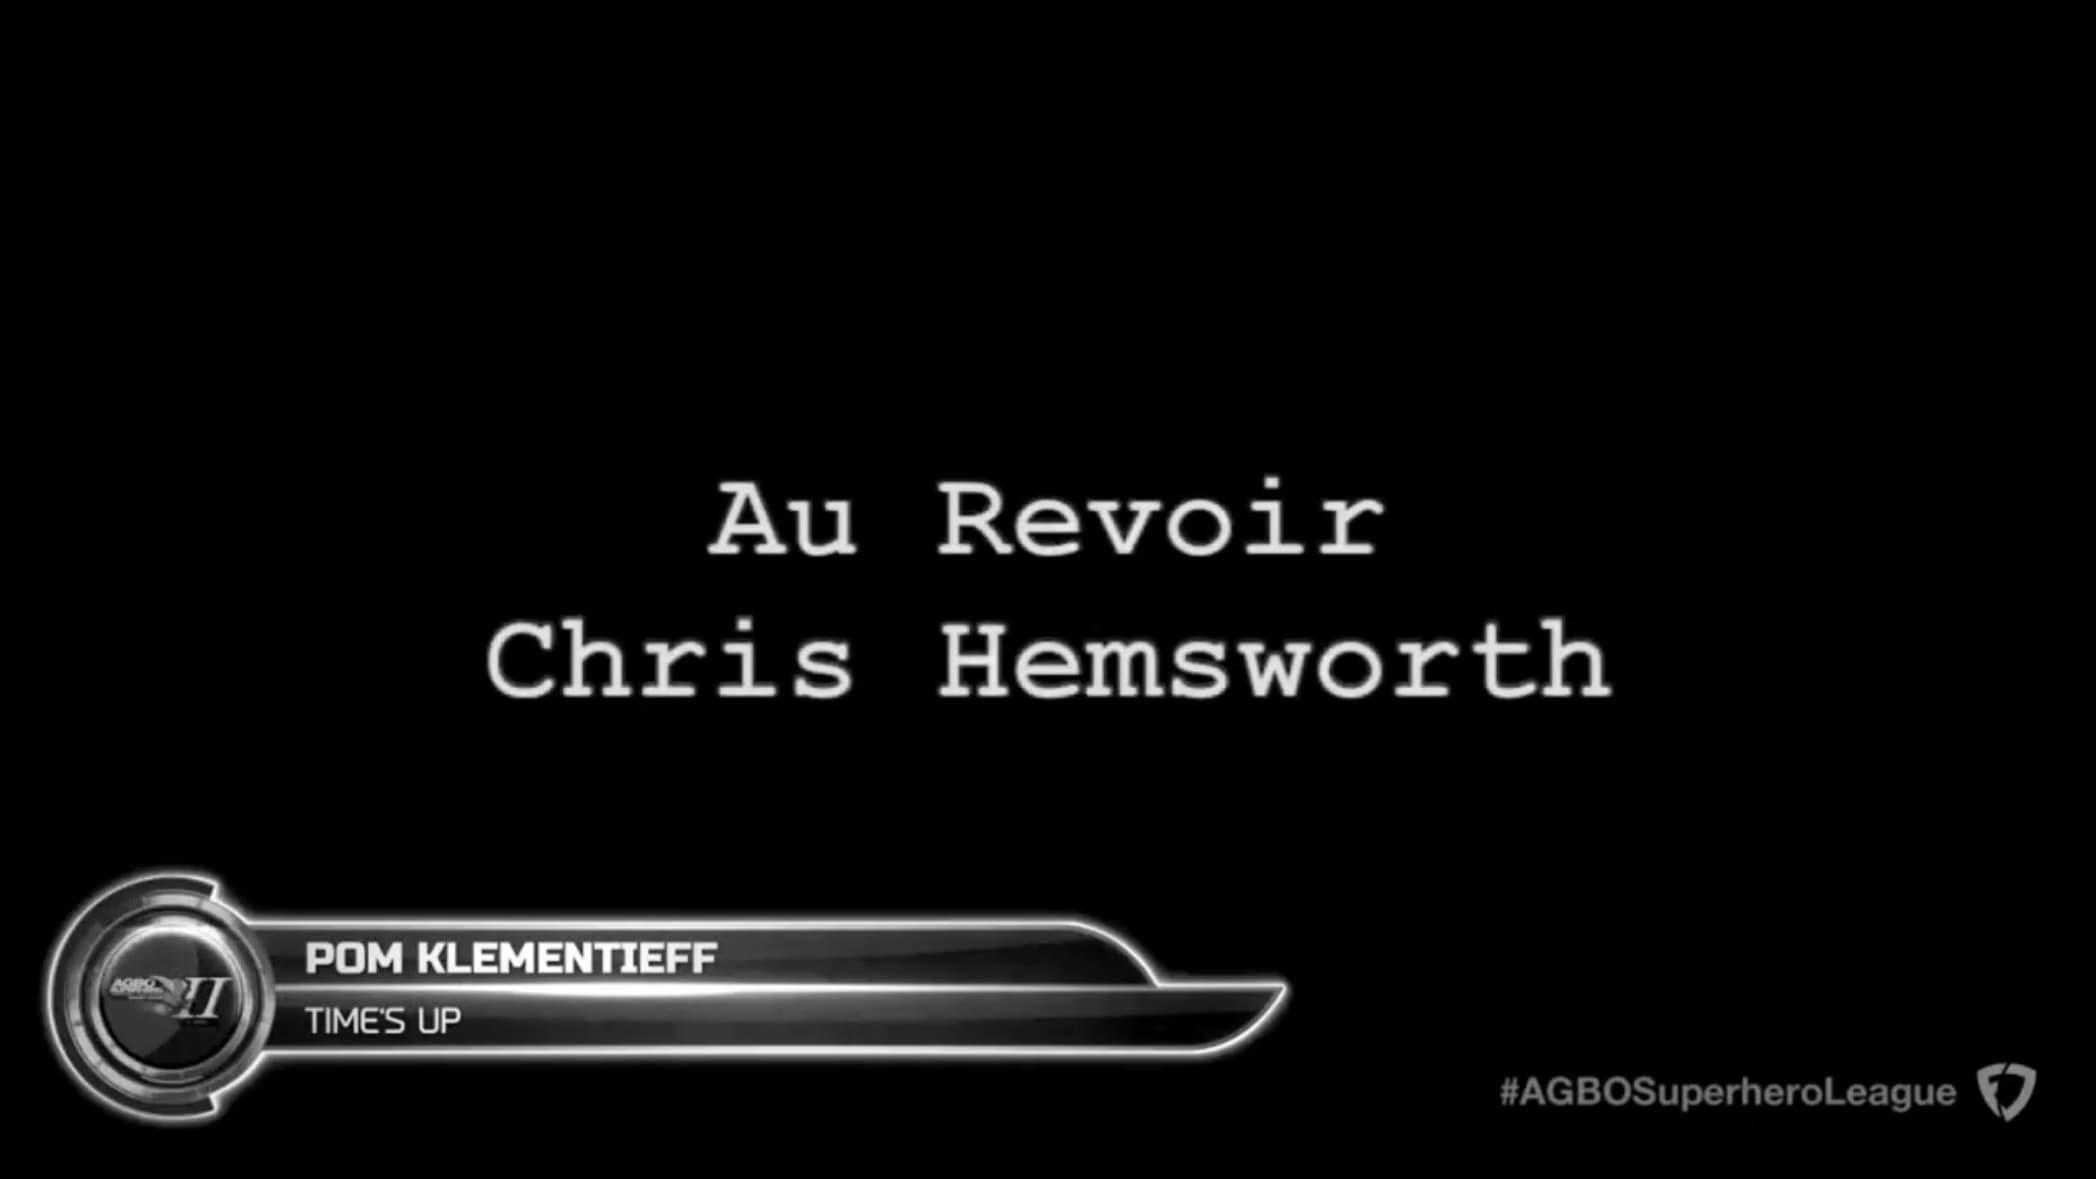 Au Revoir, Chris Hemsworth backdrop